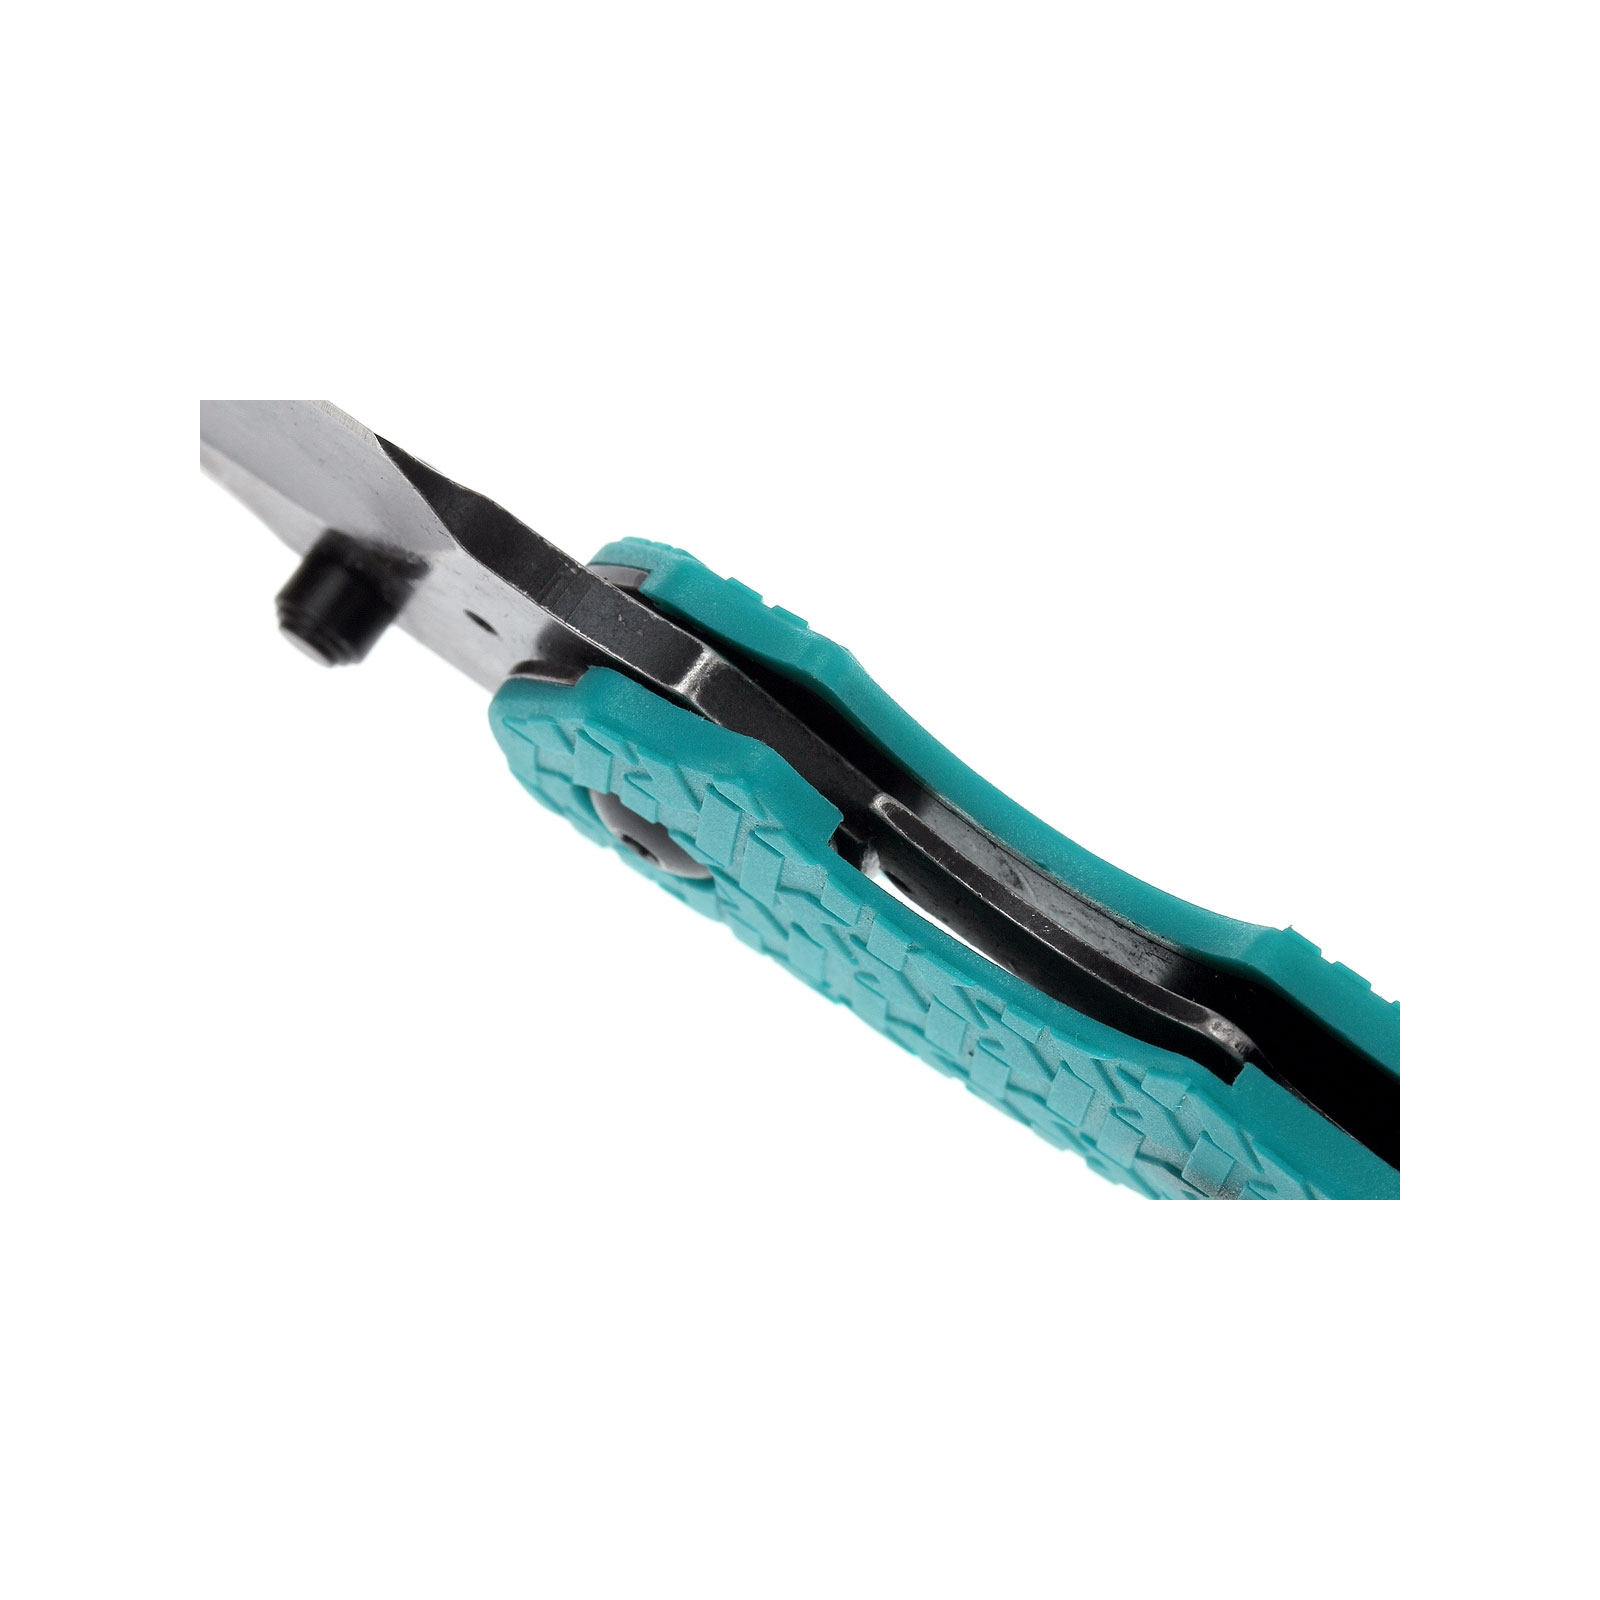 Нож Kershaw Shuffle фиолетовый (8700PURBW) изображение 4